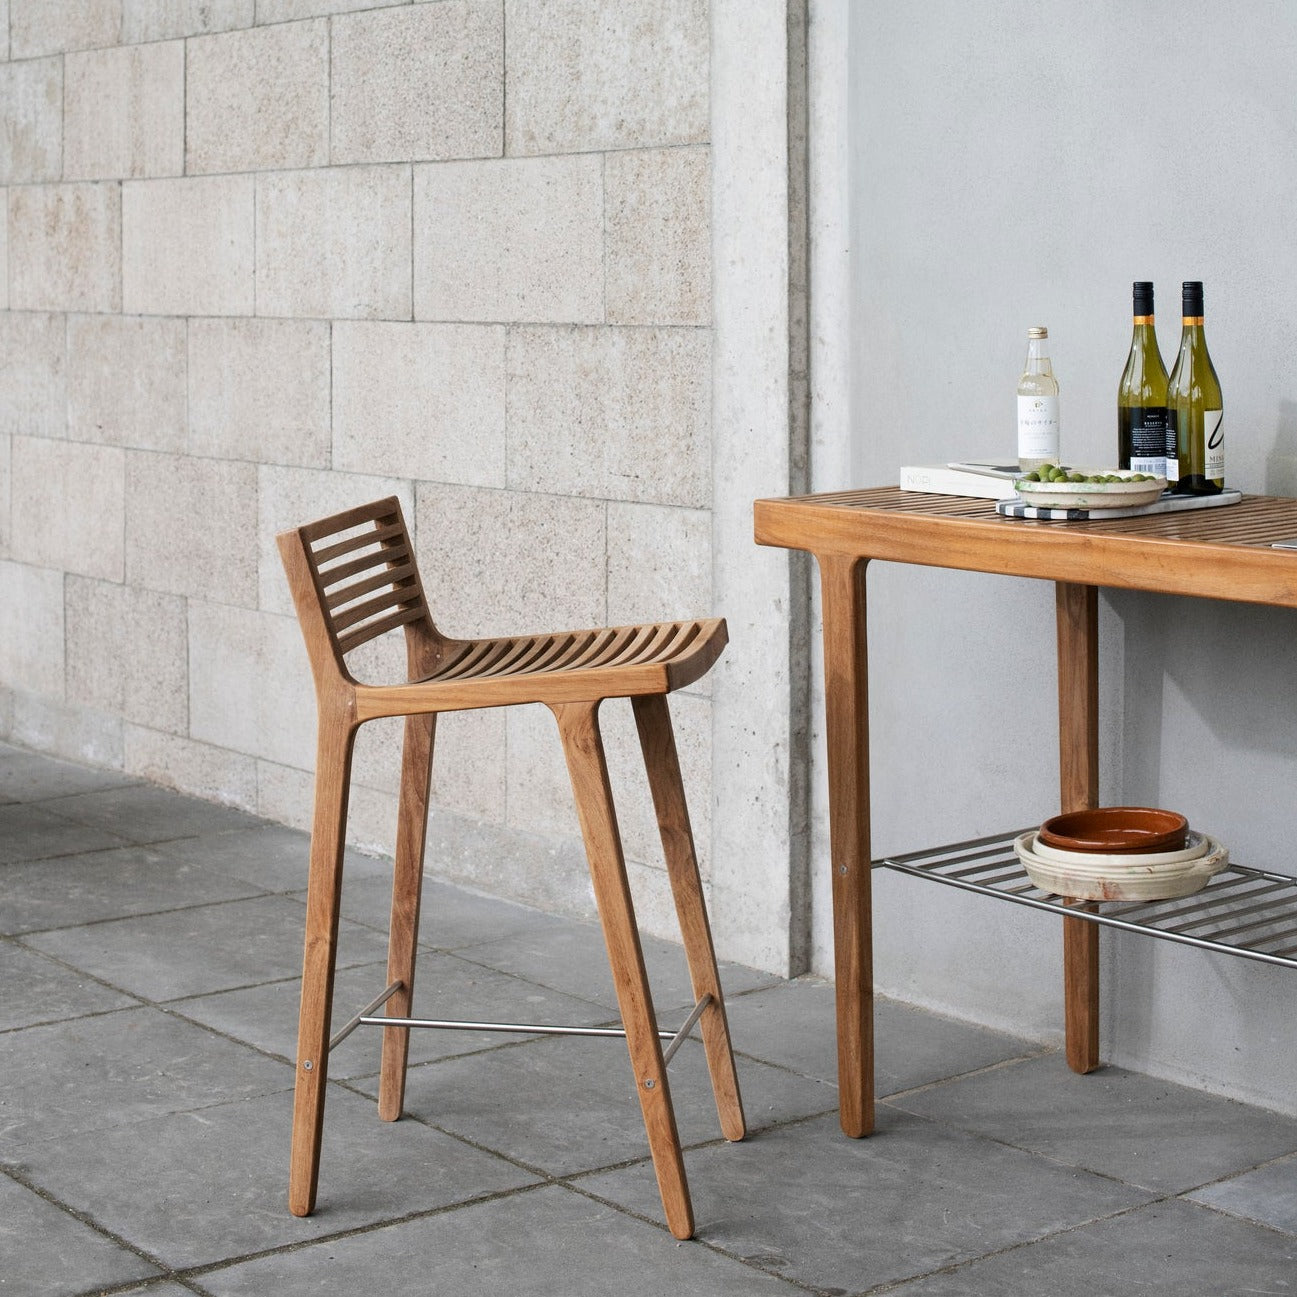 Sibast Furniture | Rib Bar Chair - Outdoor